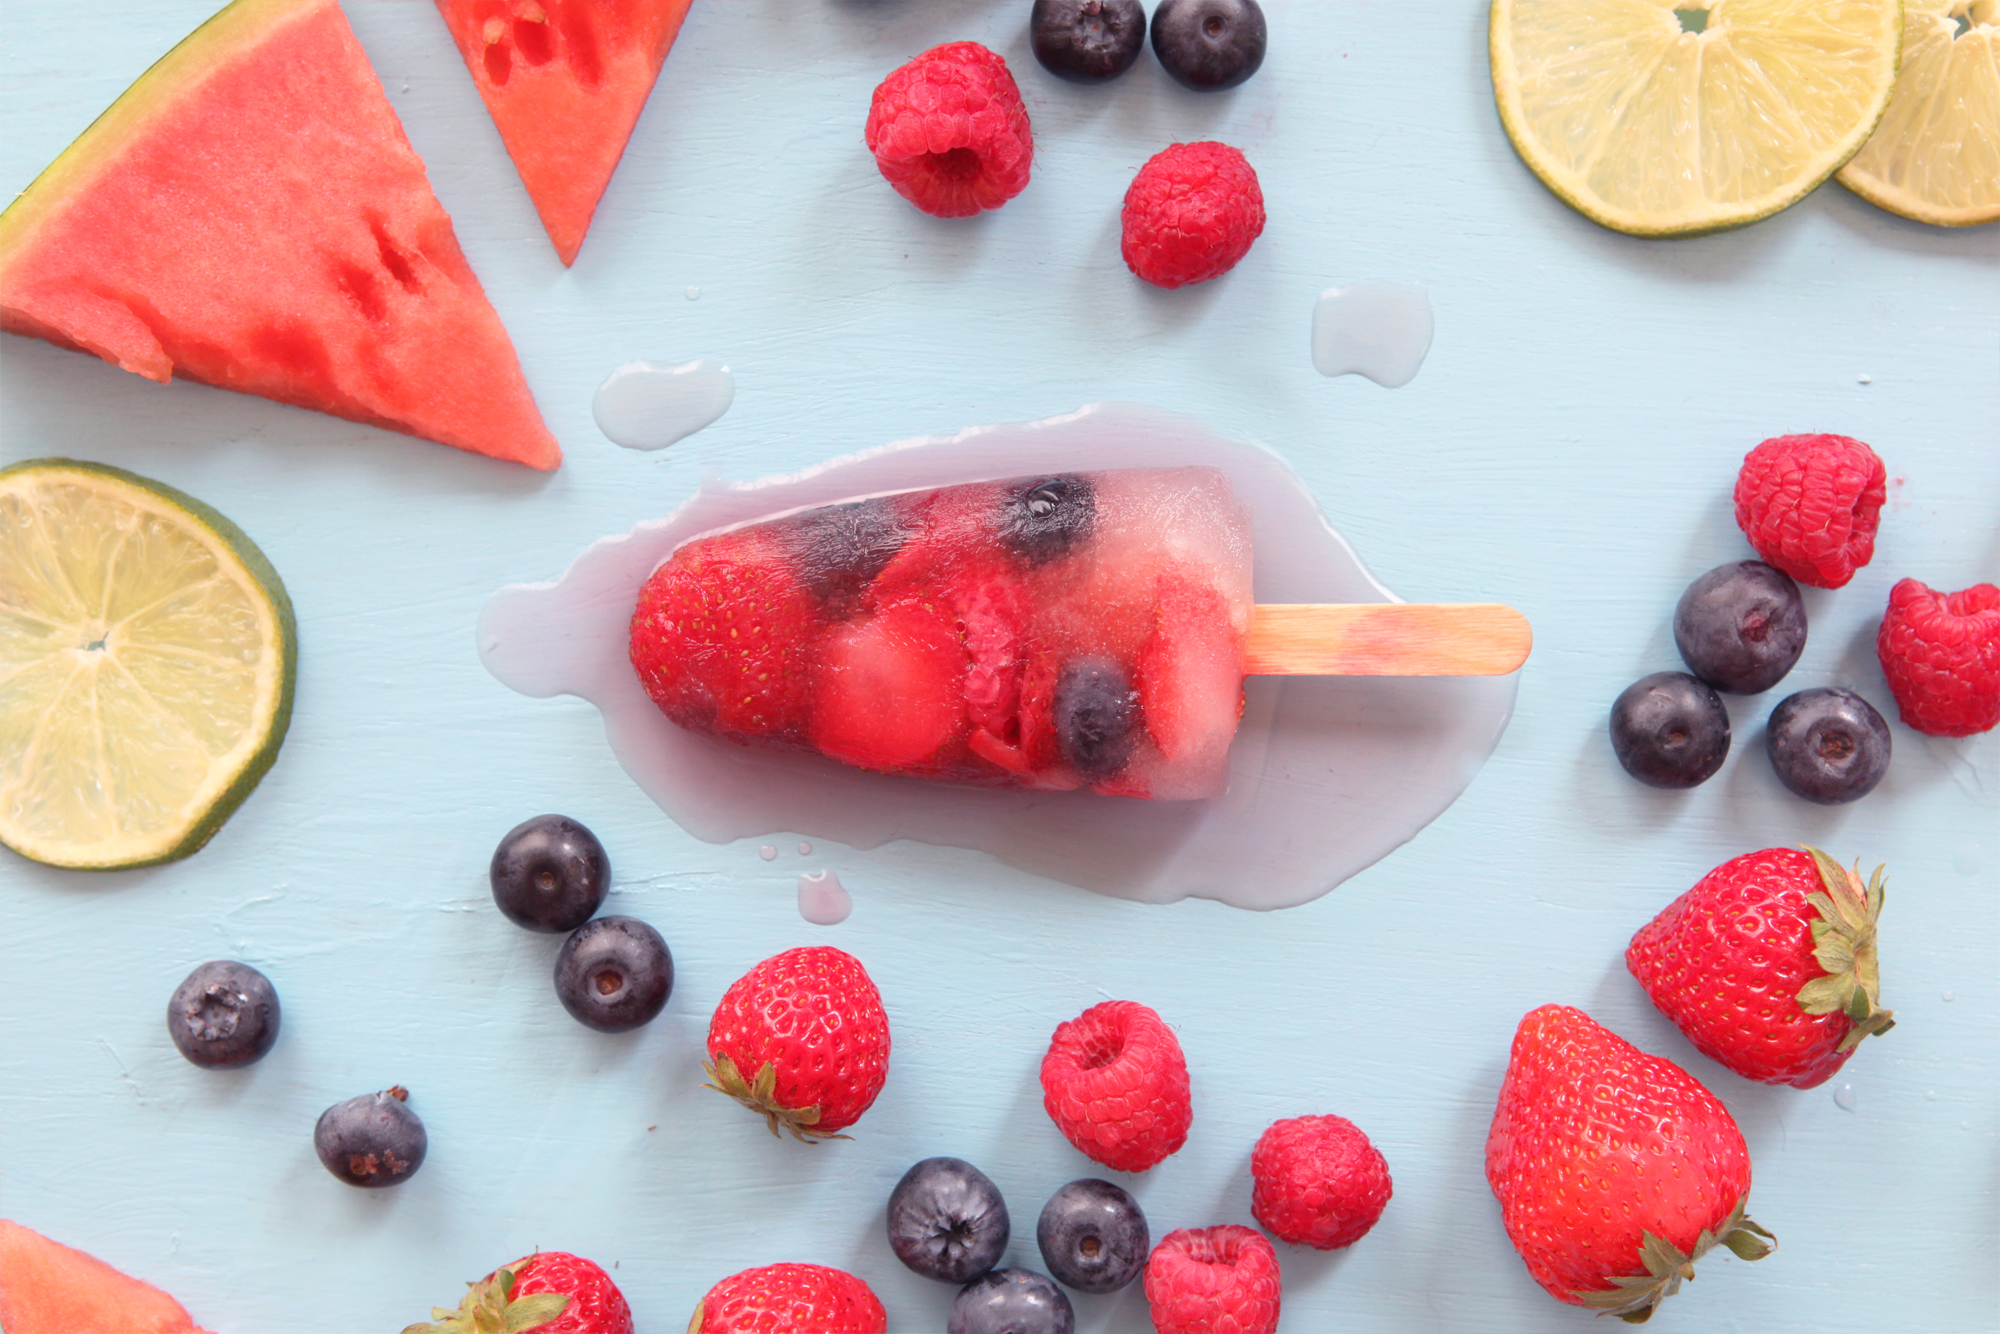 Don't mess with te rabbit - IKEA - les glaces aux fruits anti canicule - framboise myrtilles fraises